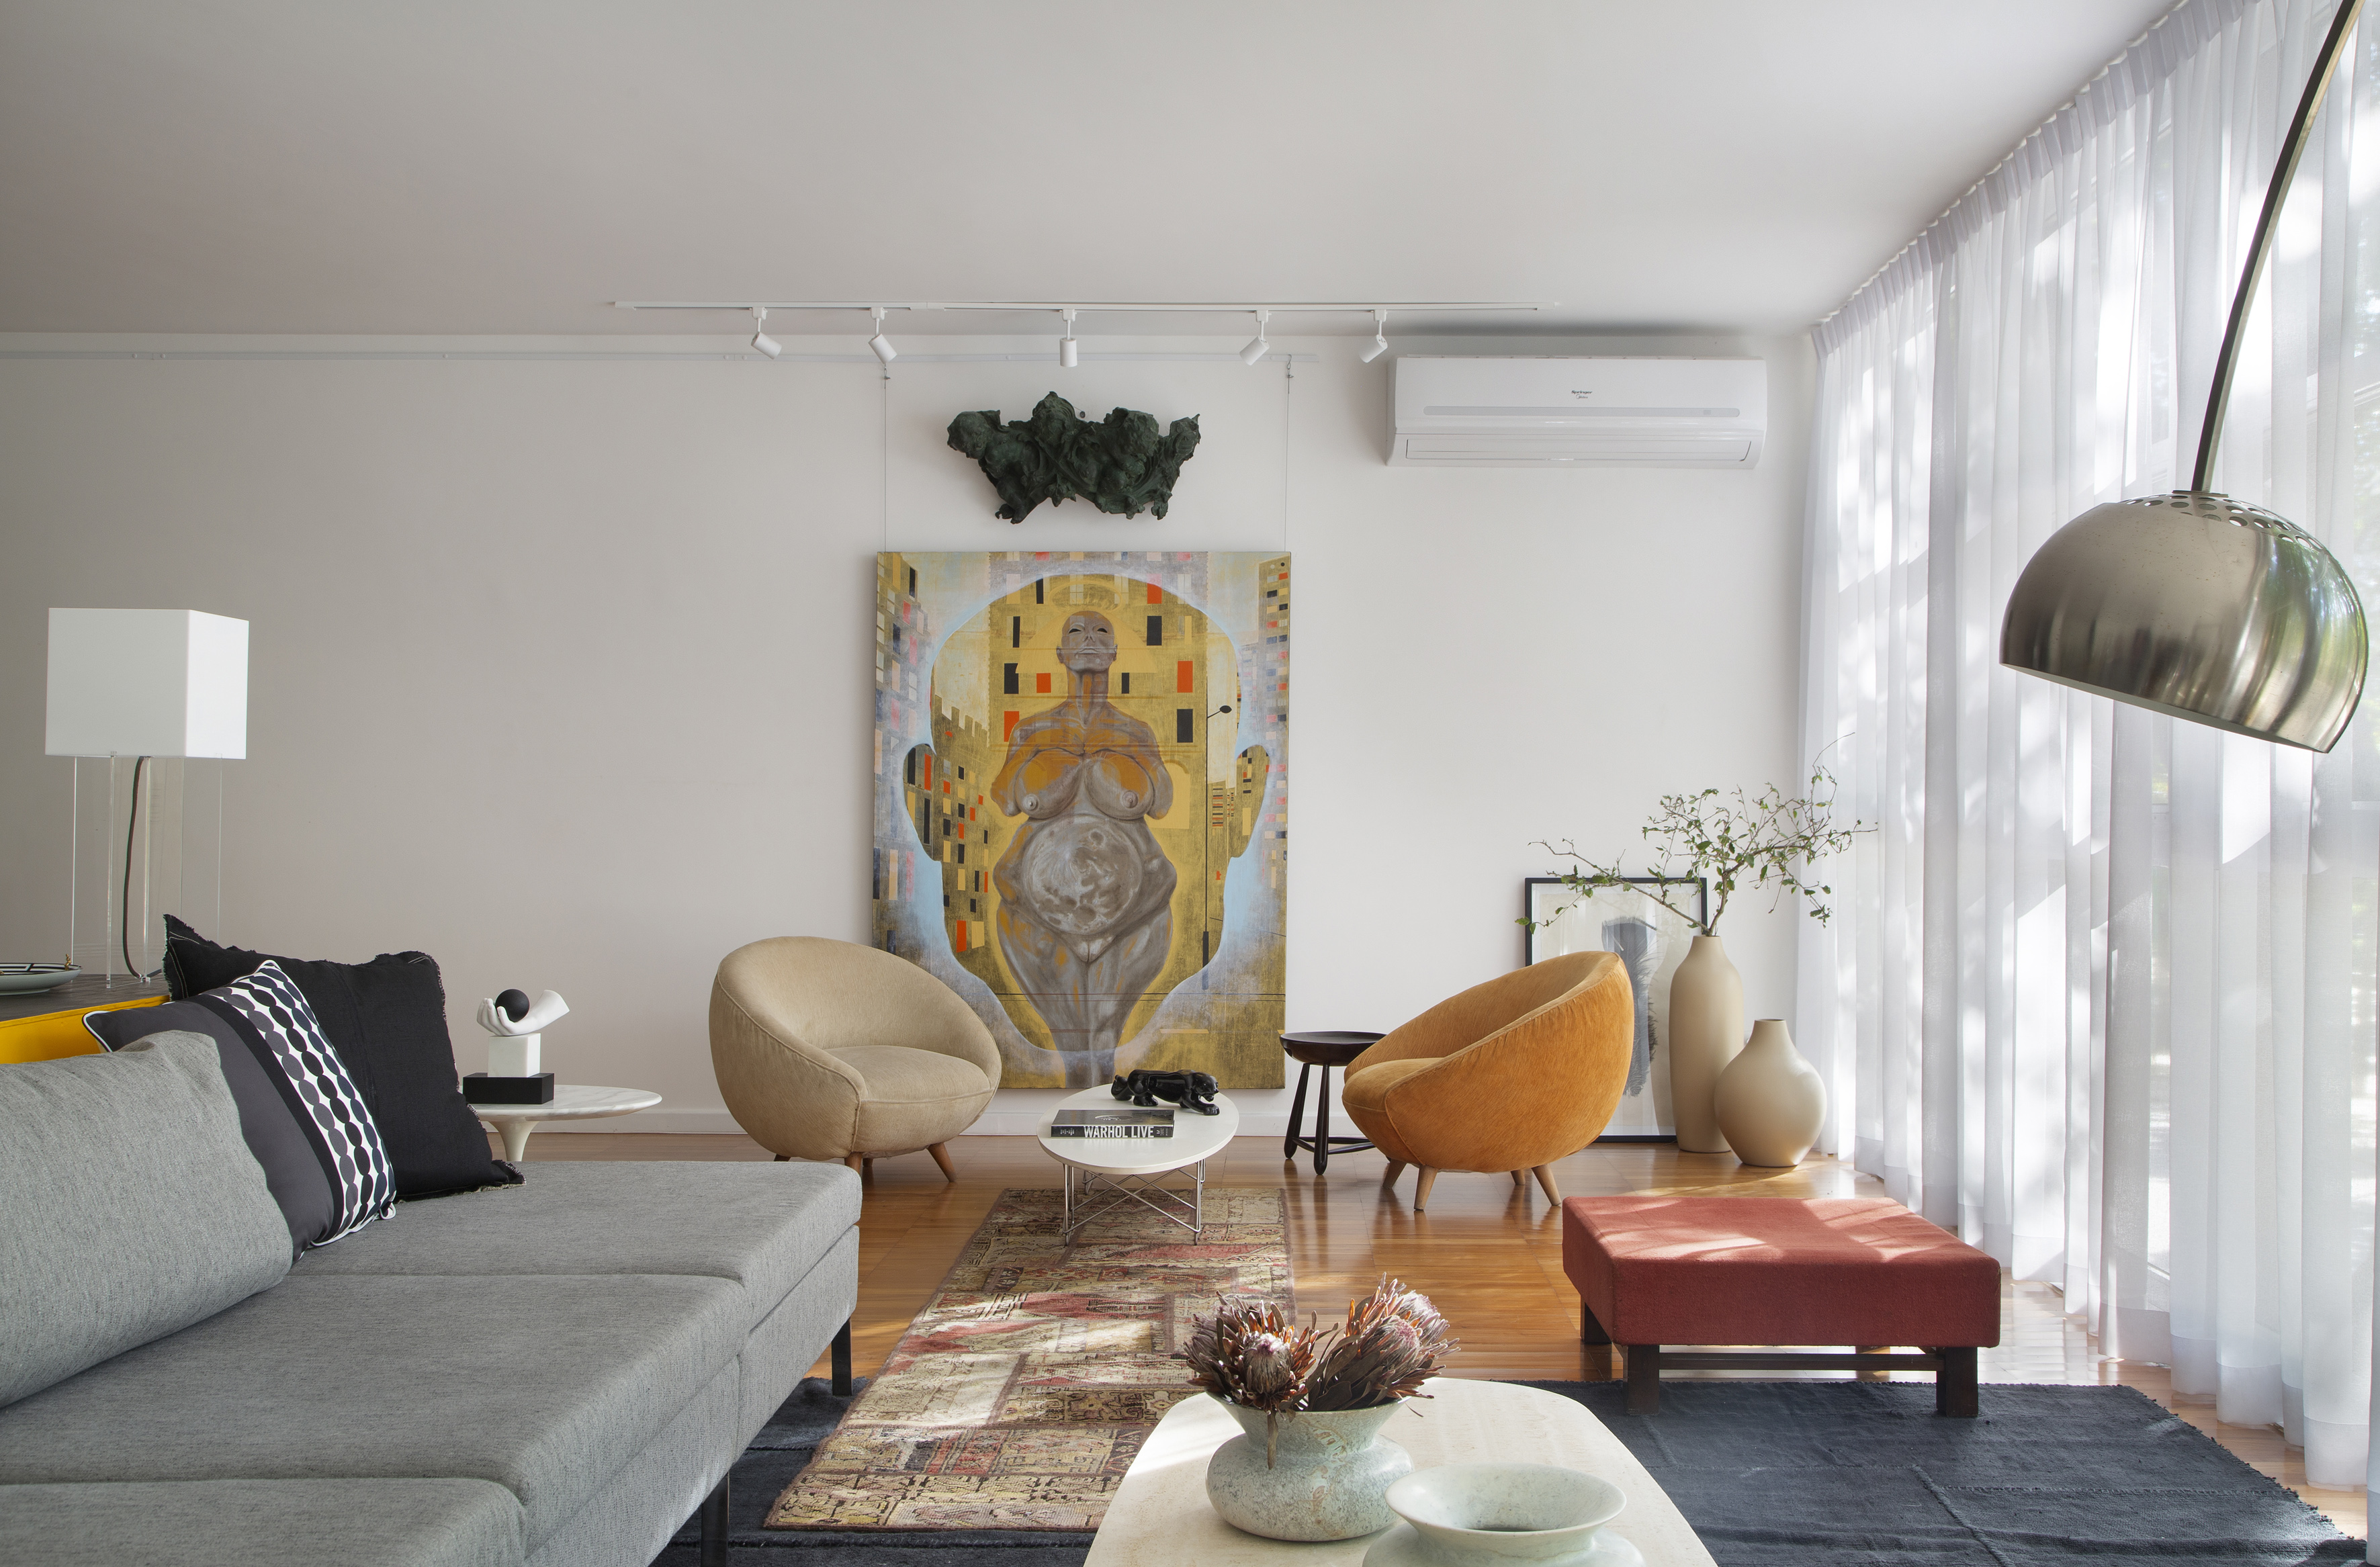 Projeto de Ricardo Melo e Rodrigo Passos. Na foto, sala de estar clara com cortina branca, tapete azul e móveis de design